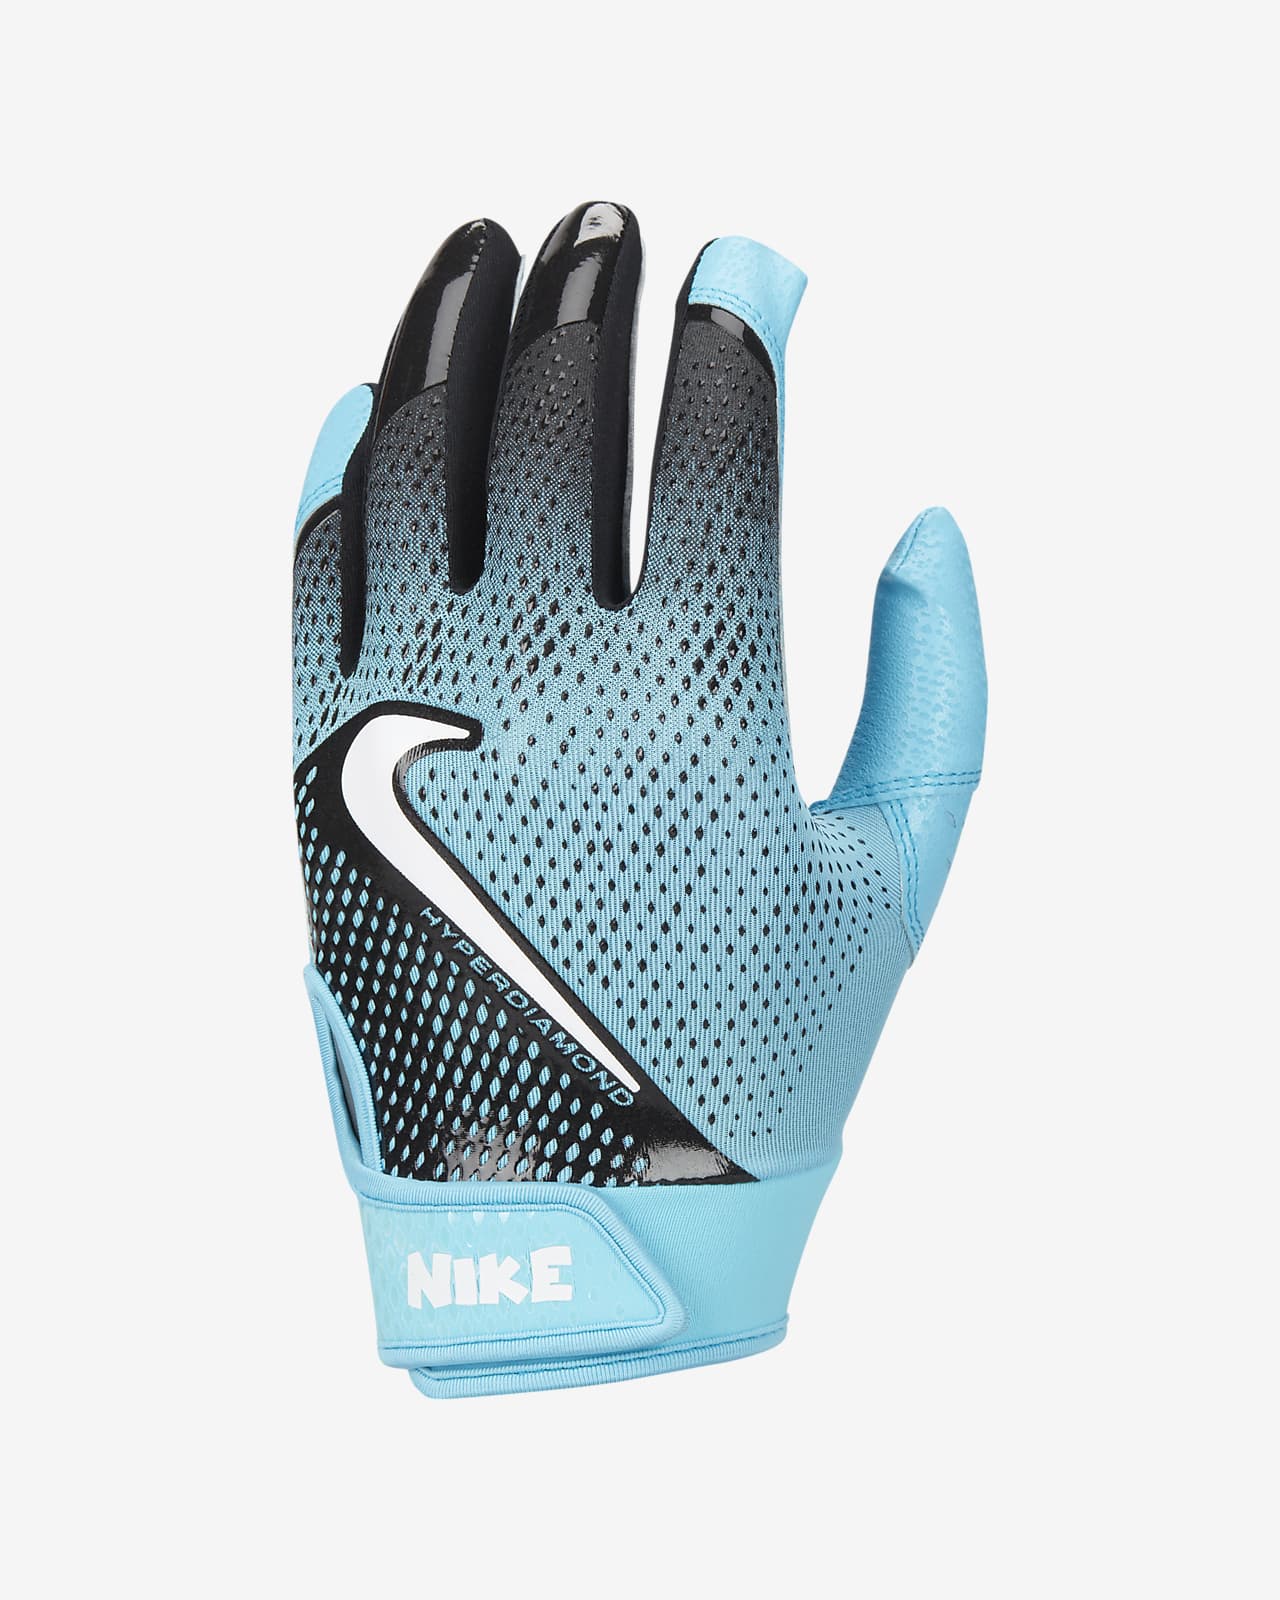 Nike Hyperdiamond Kids' Baseball Gloves